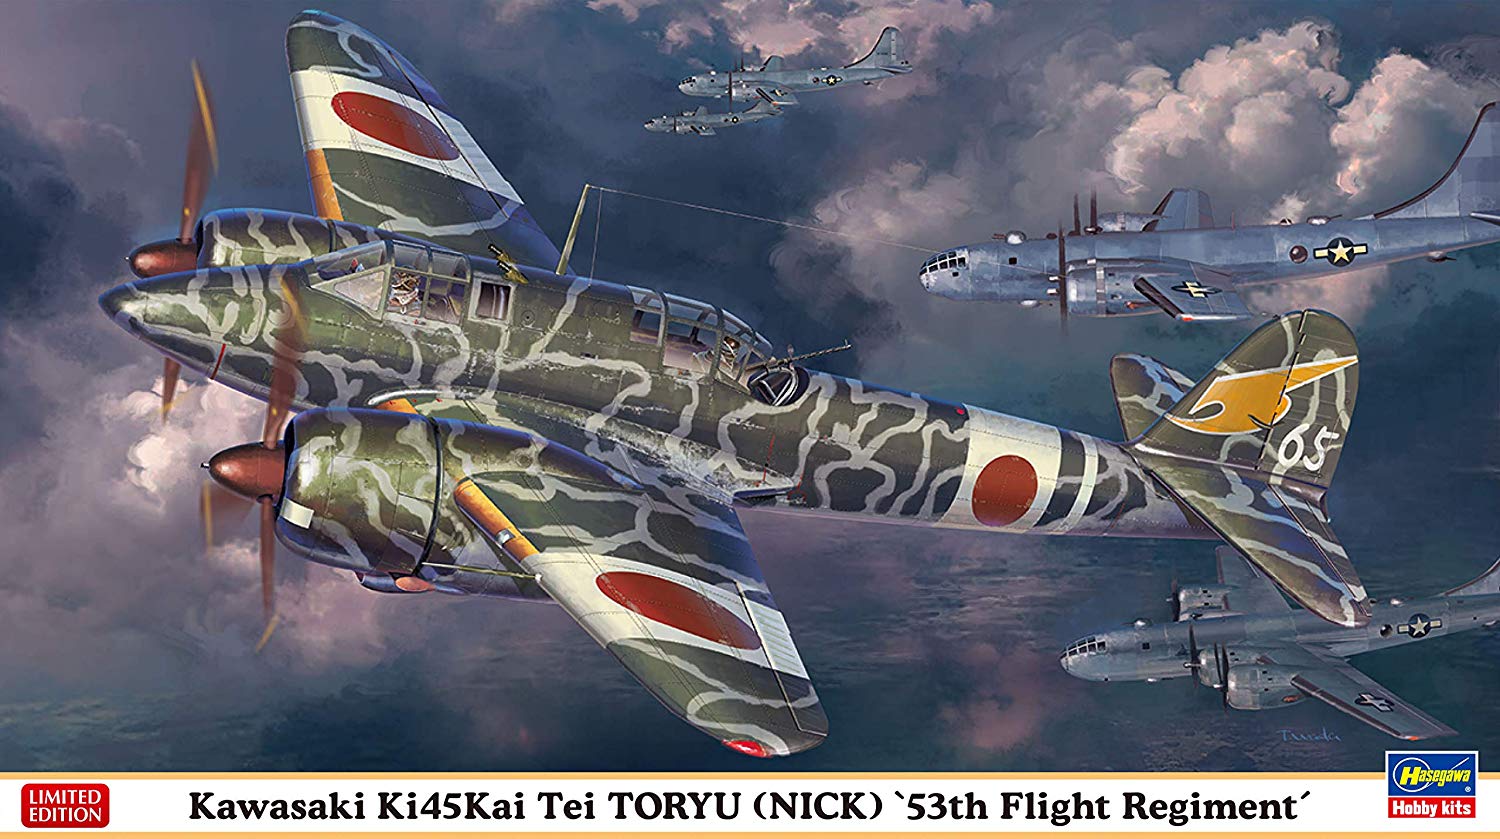 Kawasaki Ki-45-Kai Tei Toryu (Nick) 53th Flight Regiment